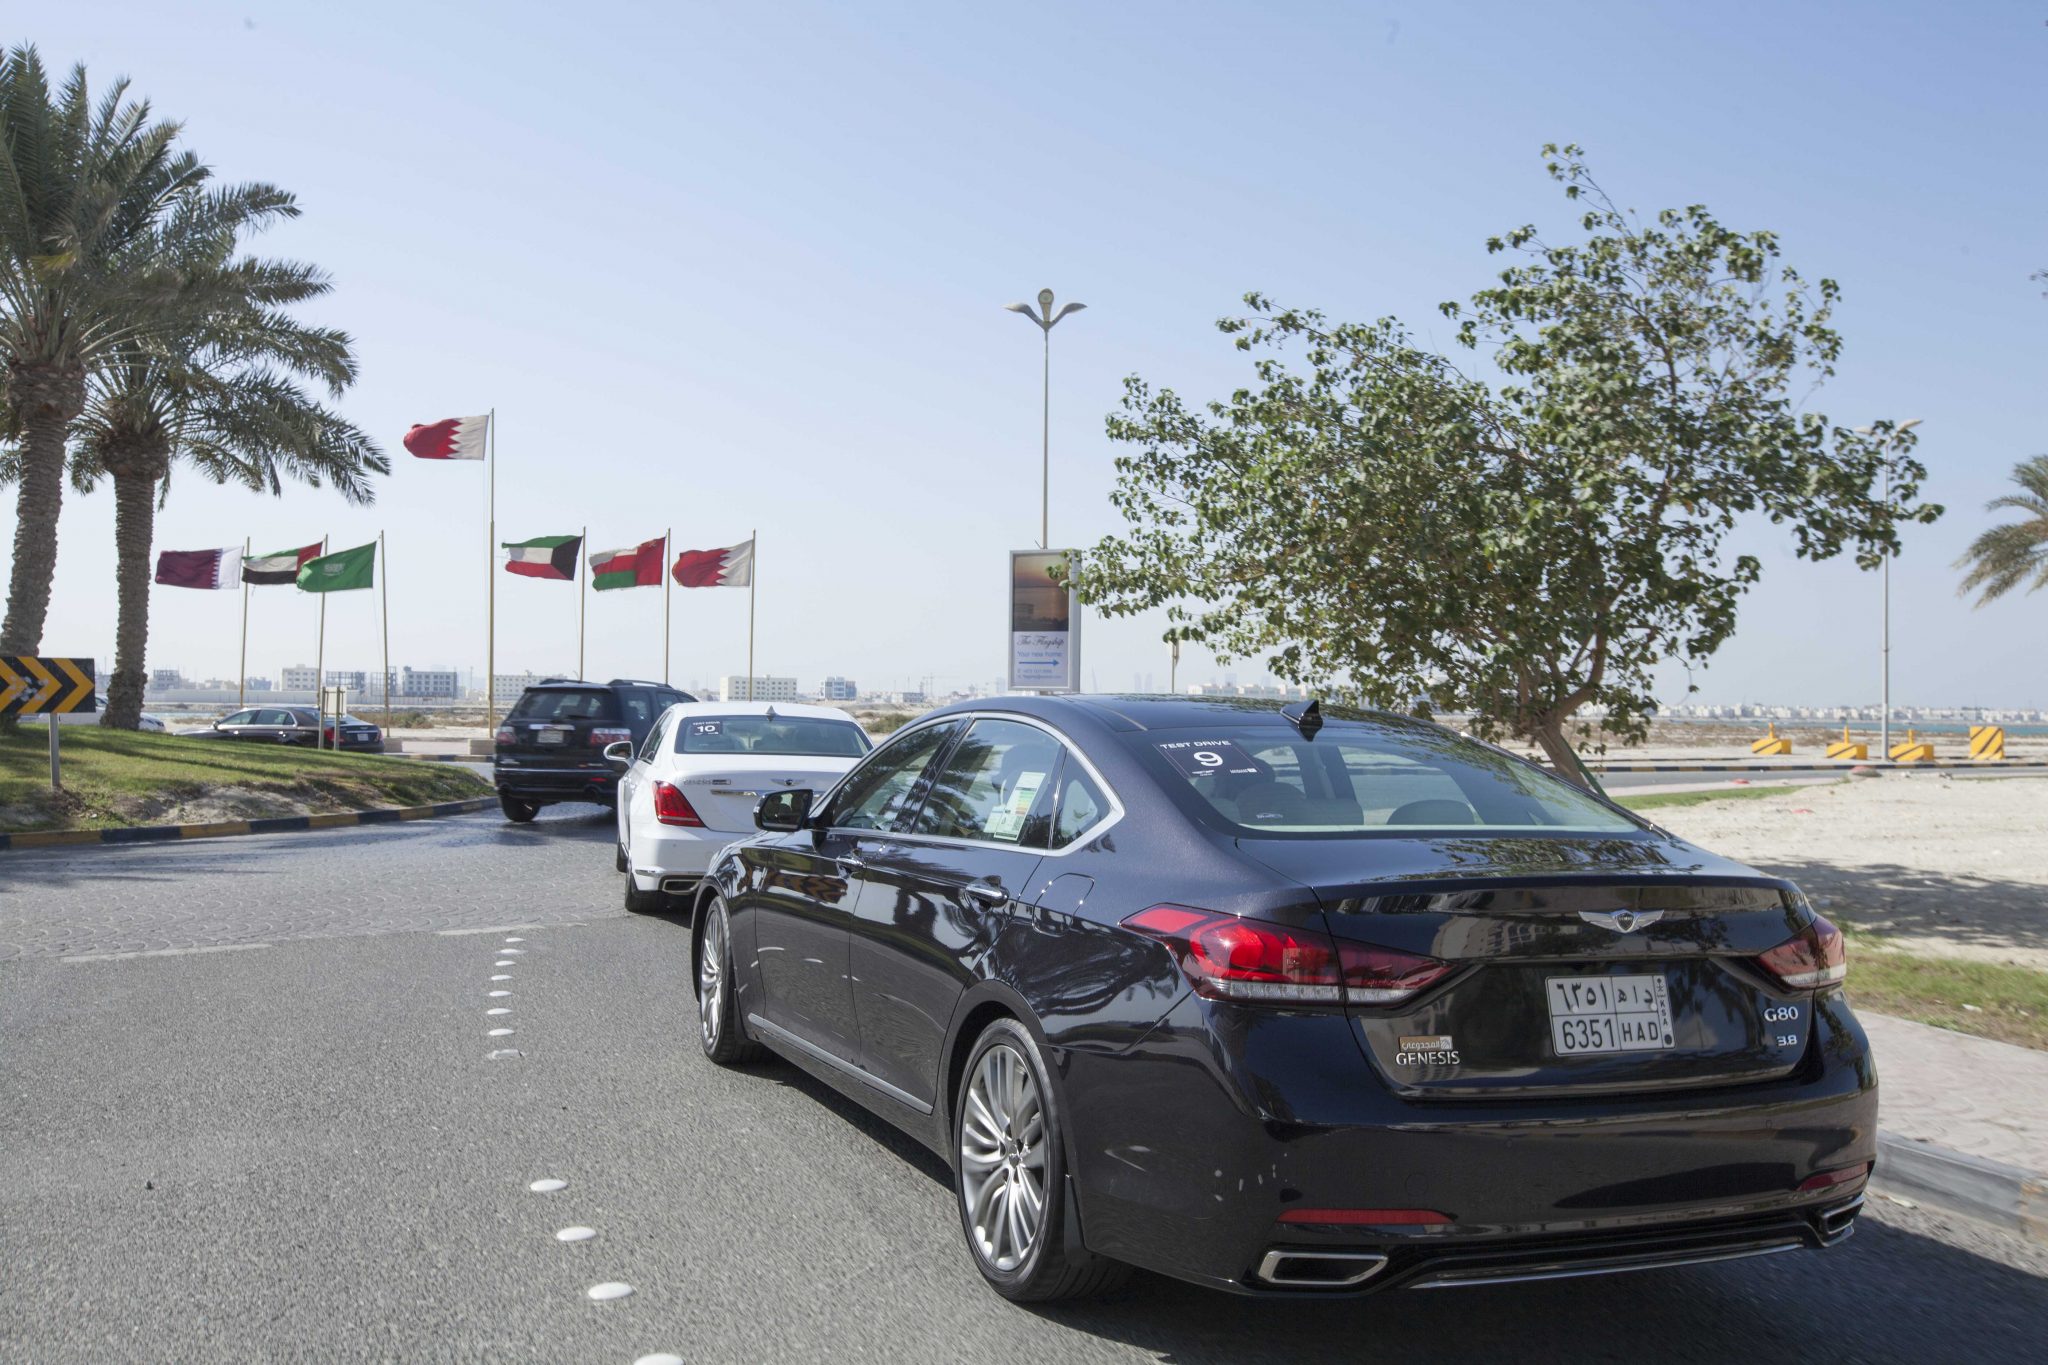 المجدوعي للسيارات تكرم عملائها وتنظم لهم رحلة مميزة الى مملكة البحرين